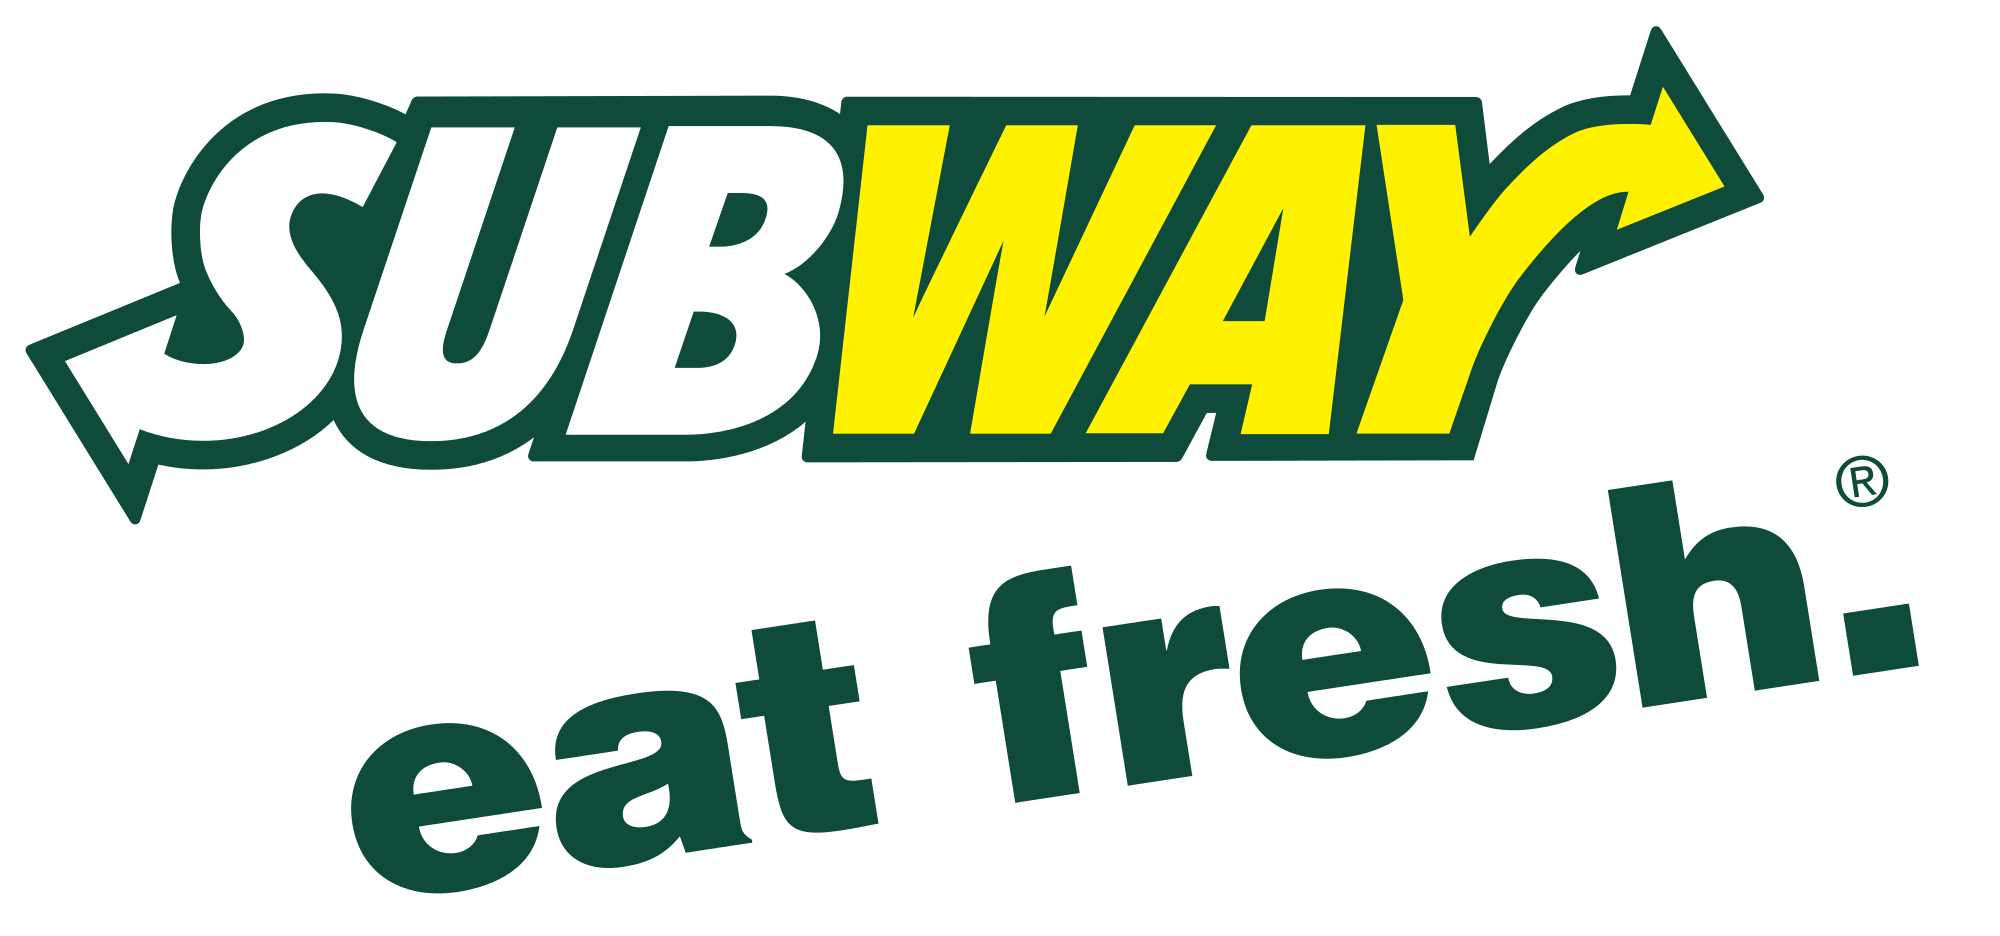 Subway Eat Fresh Logo - File:Subway Eat Fresh Logo.svg - Wikimedia Commons